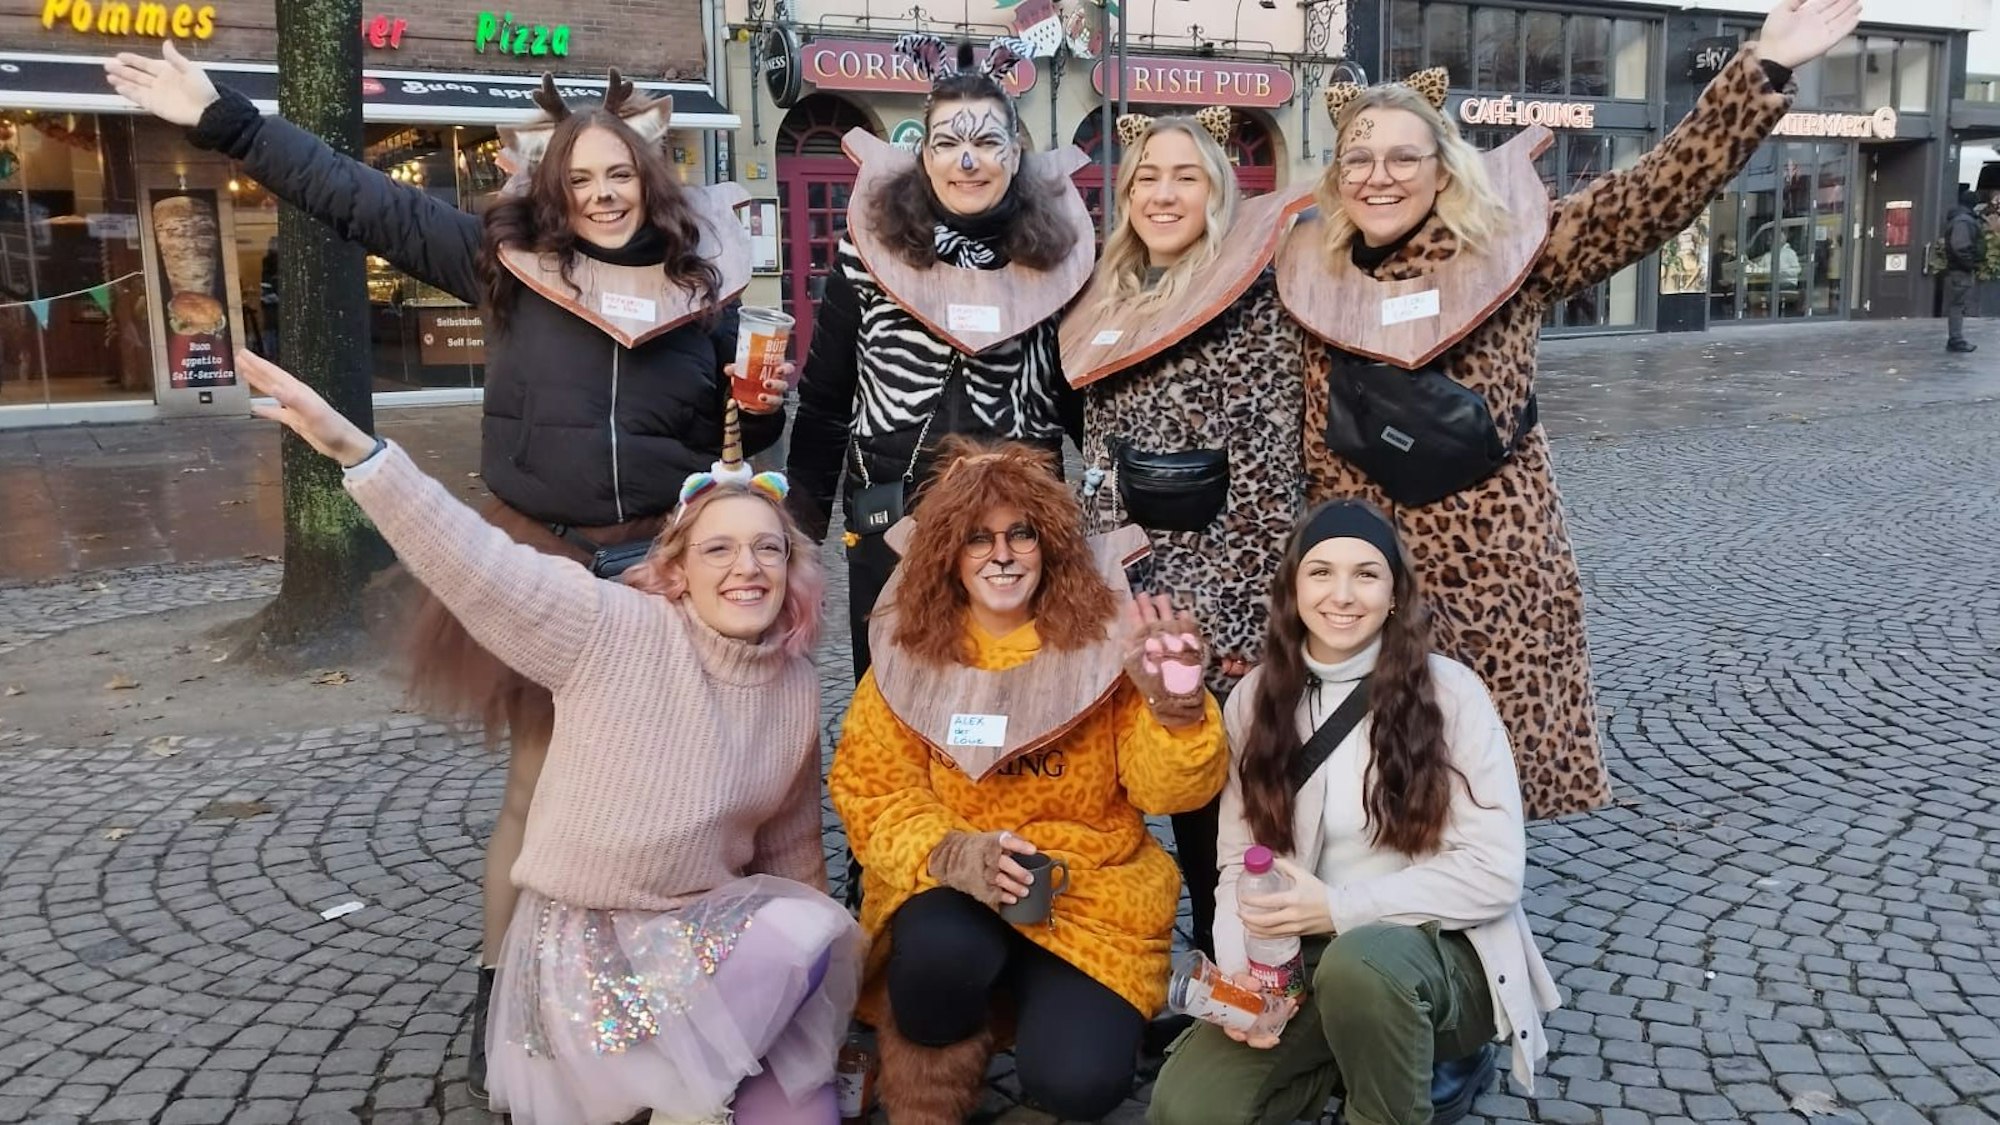 Sechs Frauen in Kostümen posieren für ein Gruppenfoto.